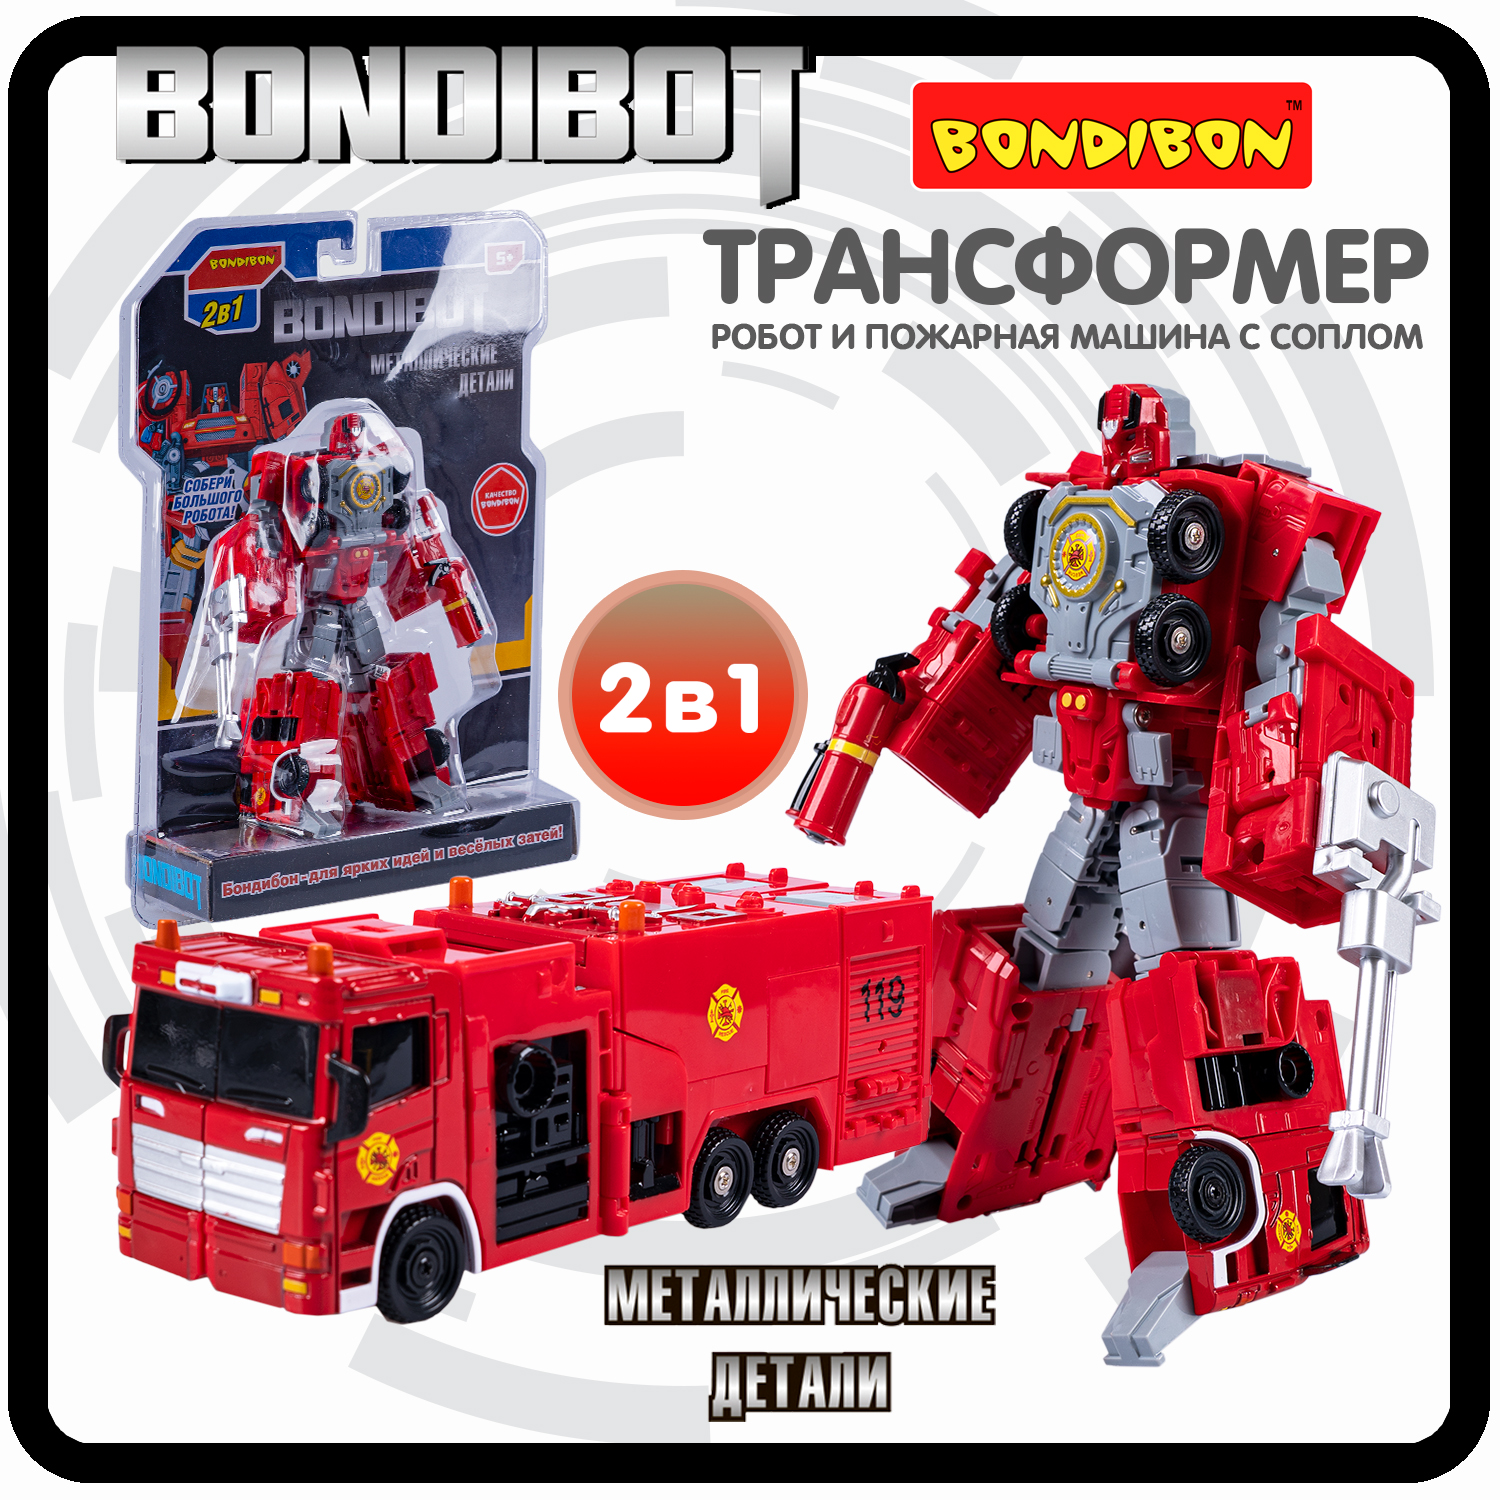 Робот трансформер 2в1 Bondibon BONDIBOT пожарная машина с соплом трансформер 2в1 bondibot робот и автомобиль bondibon красный арт hf7377a